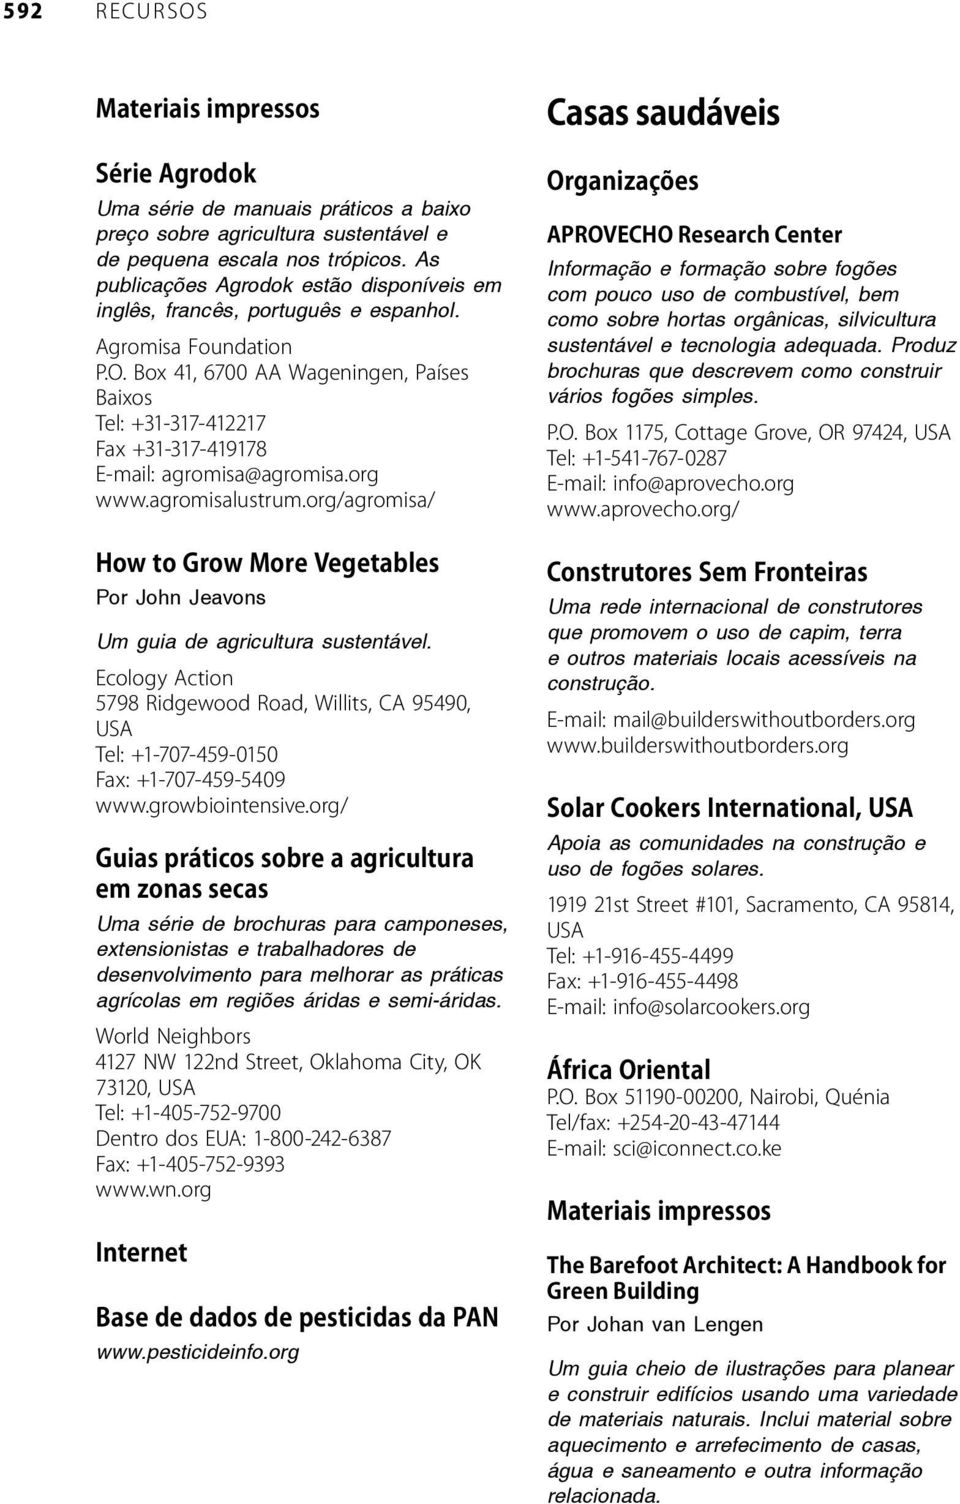 Uma série de brochuras para camponeses, extensionistas e trabalhadores de desenvolvimento para melhorar as práticas agrícolas em regiões áridas e semi-áridas. www.pesticideinfo.